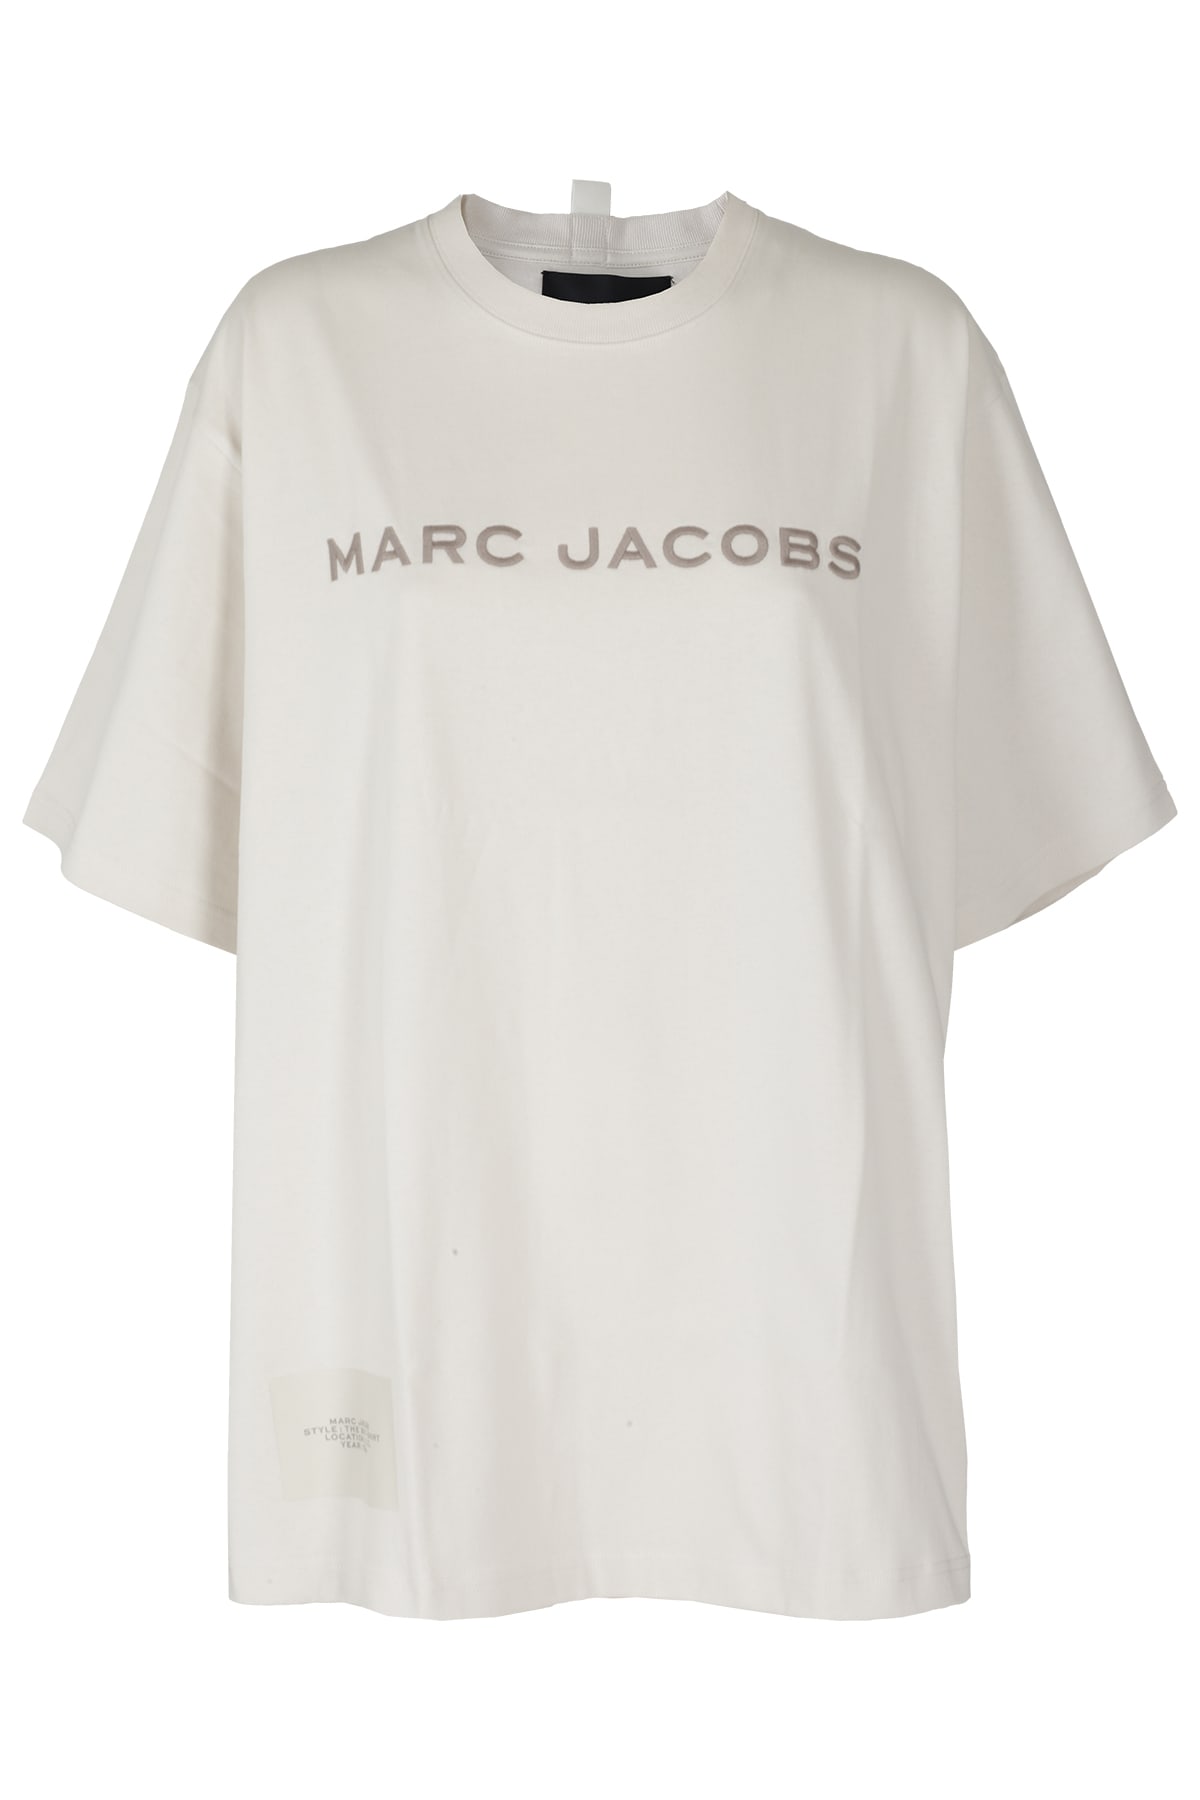 Marc Jacobs Big Tee